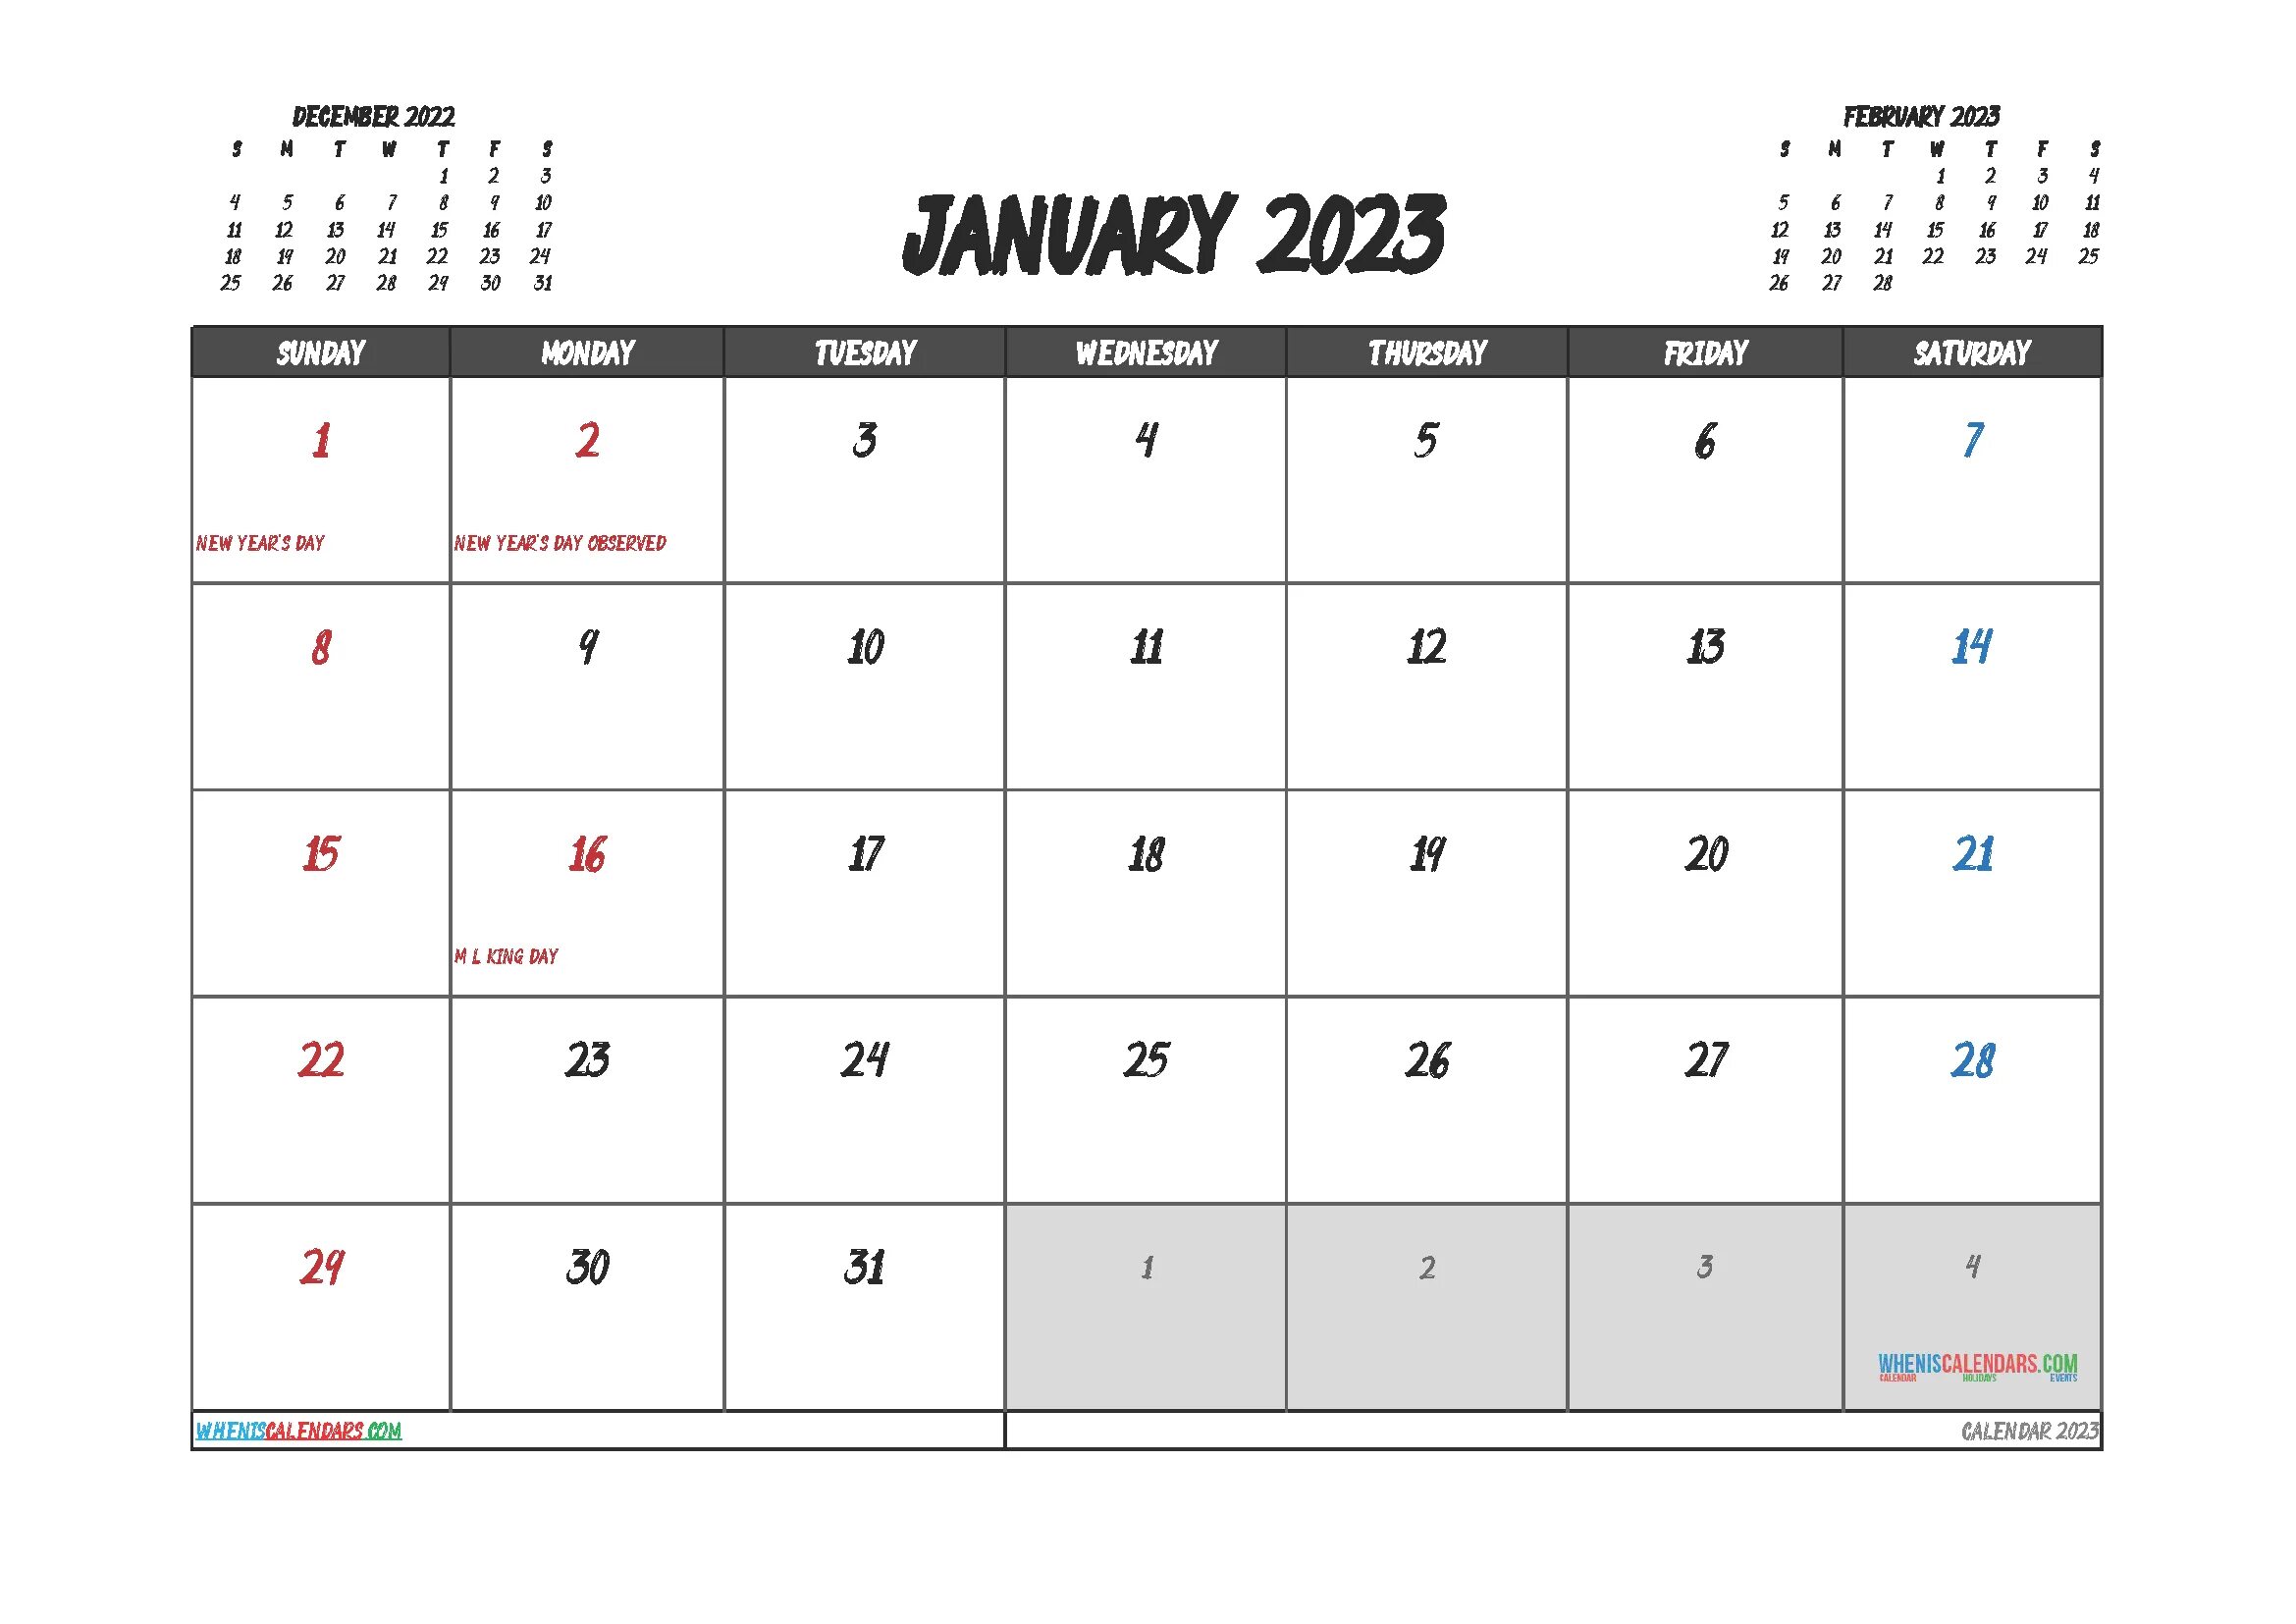 Отработанные часы февраль 2024. Календарь на ноябрь 2023 года. Сетка календаря на 2023 год. Кален 2023. Календарь на декабрь 2023 года.